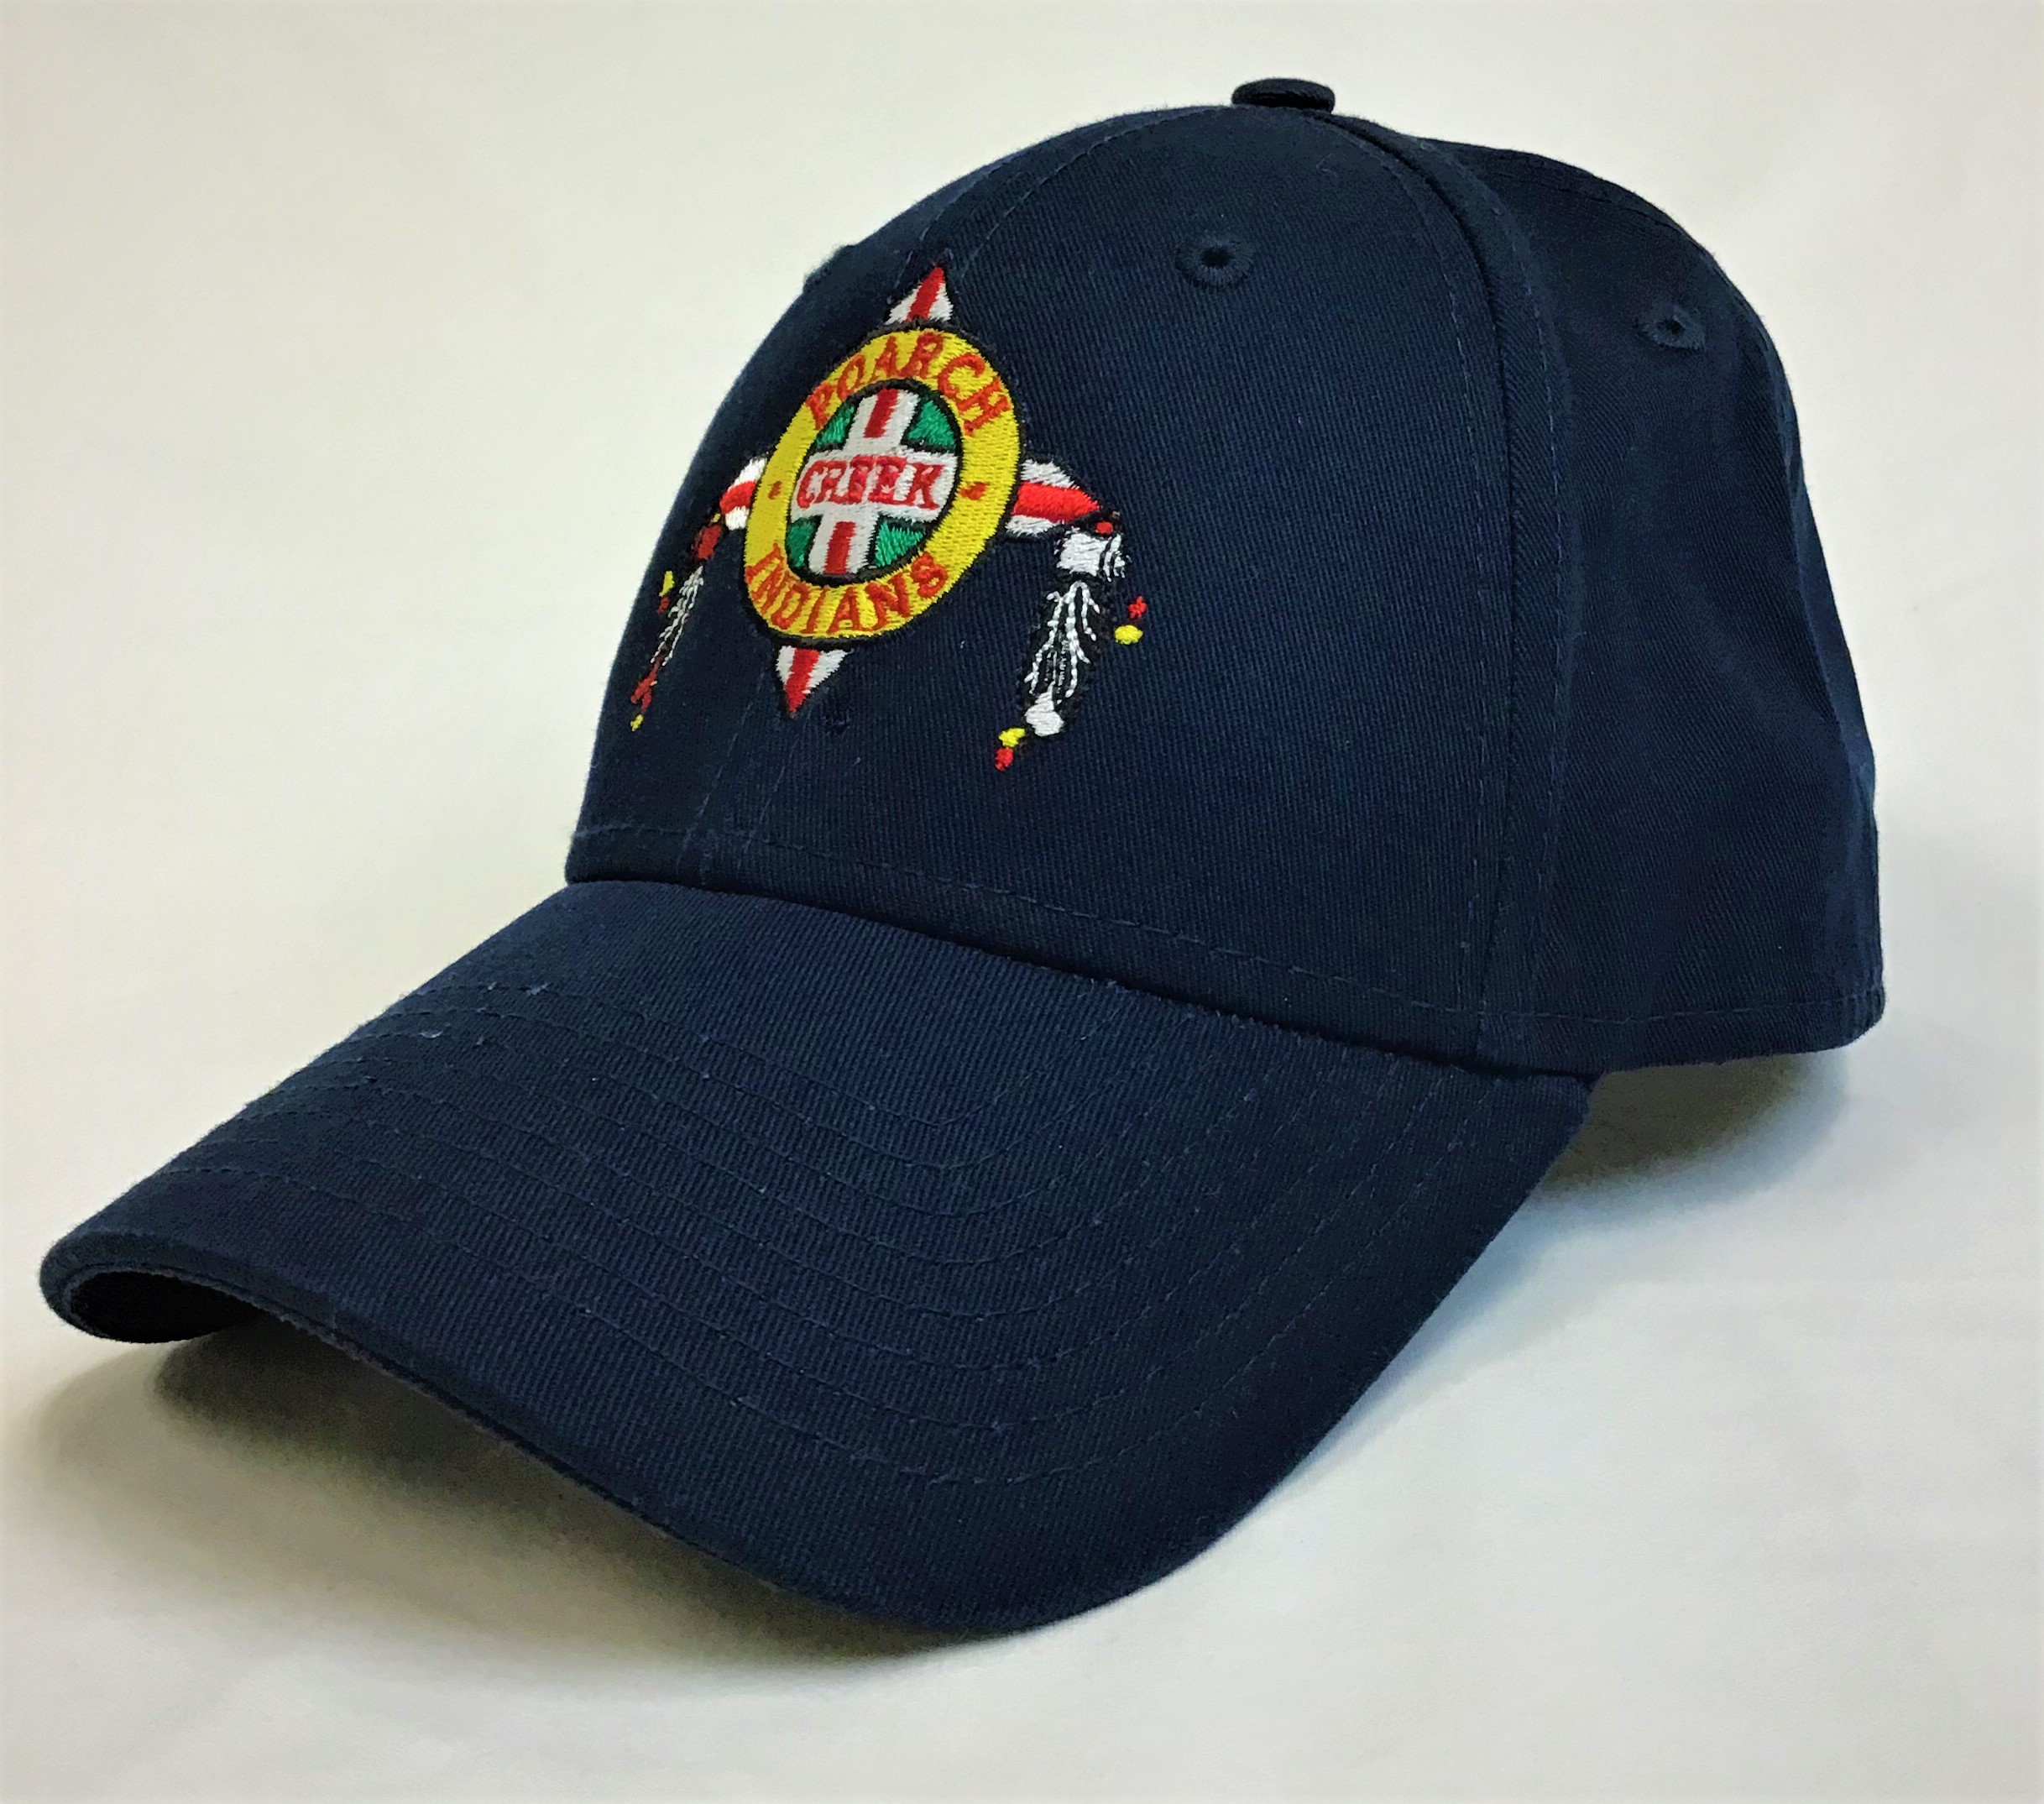 New Era Tribal Navy Blue Cap New Era Adjustable 